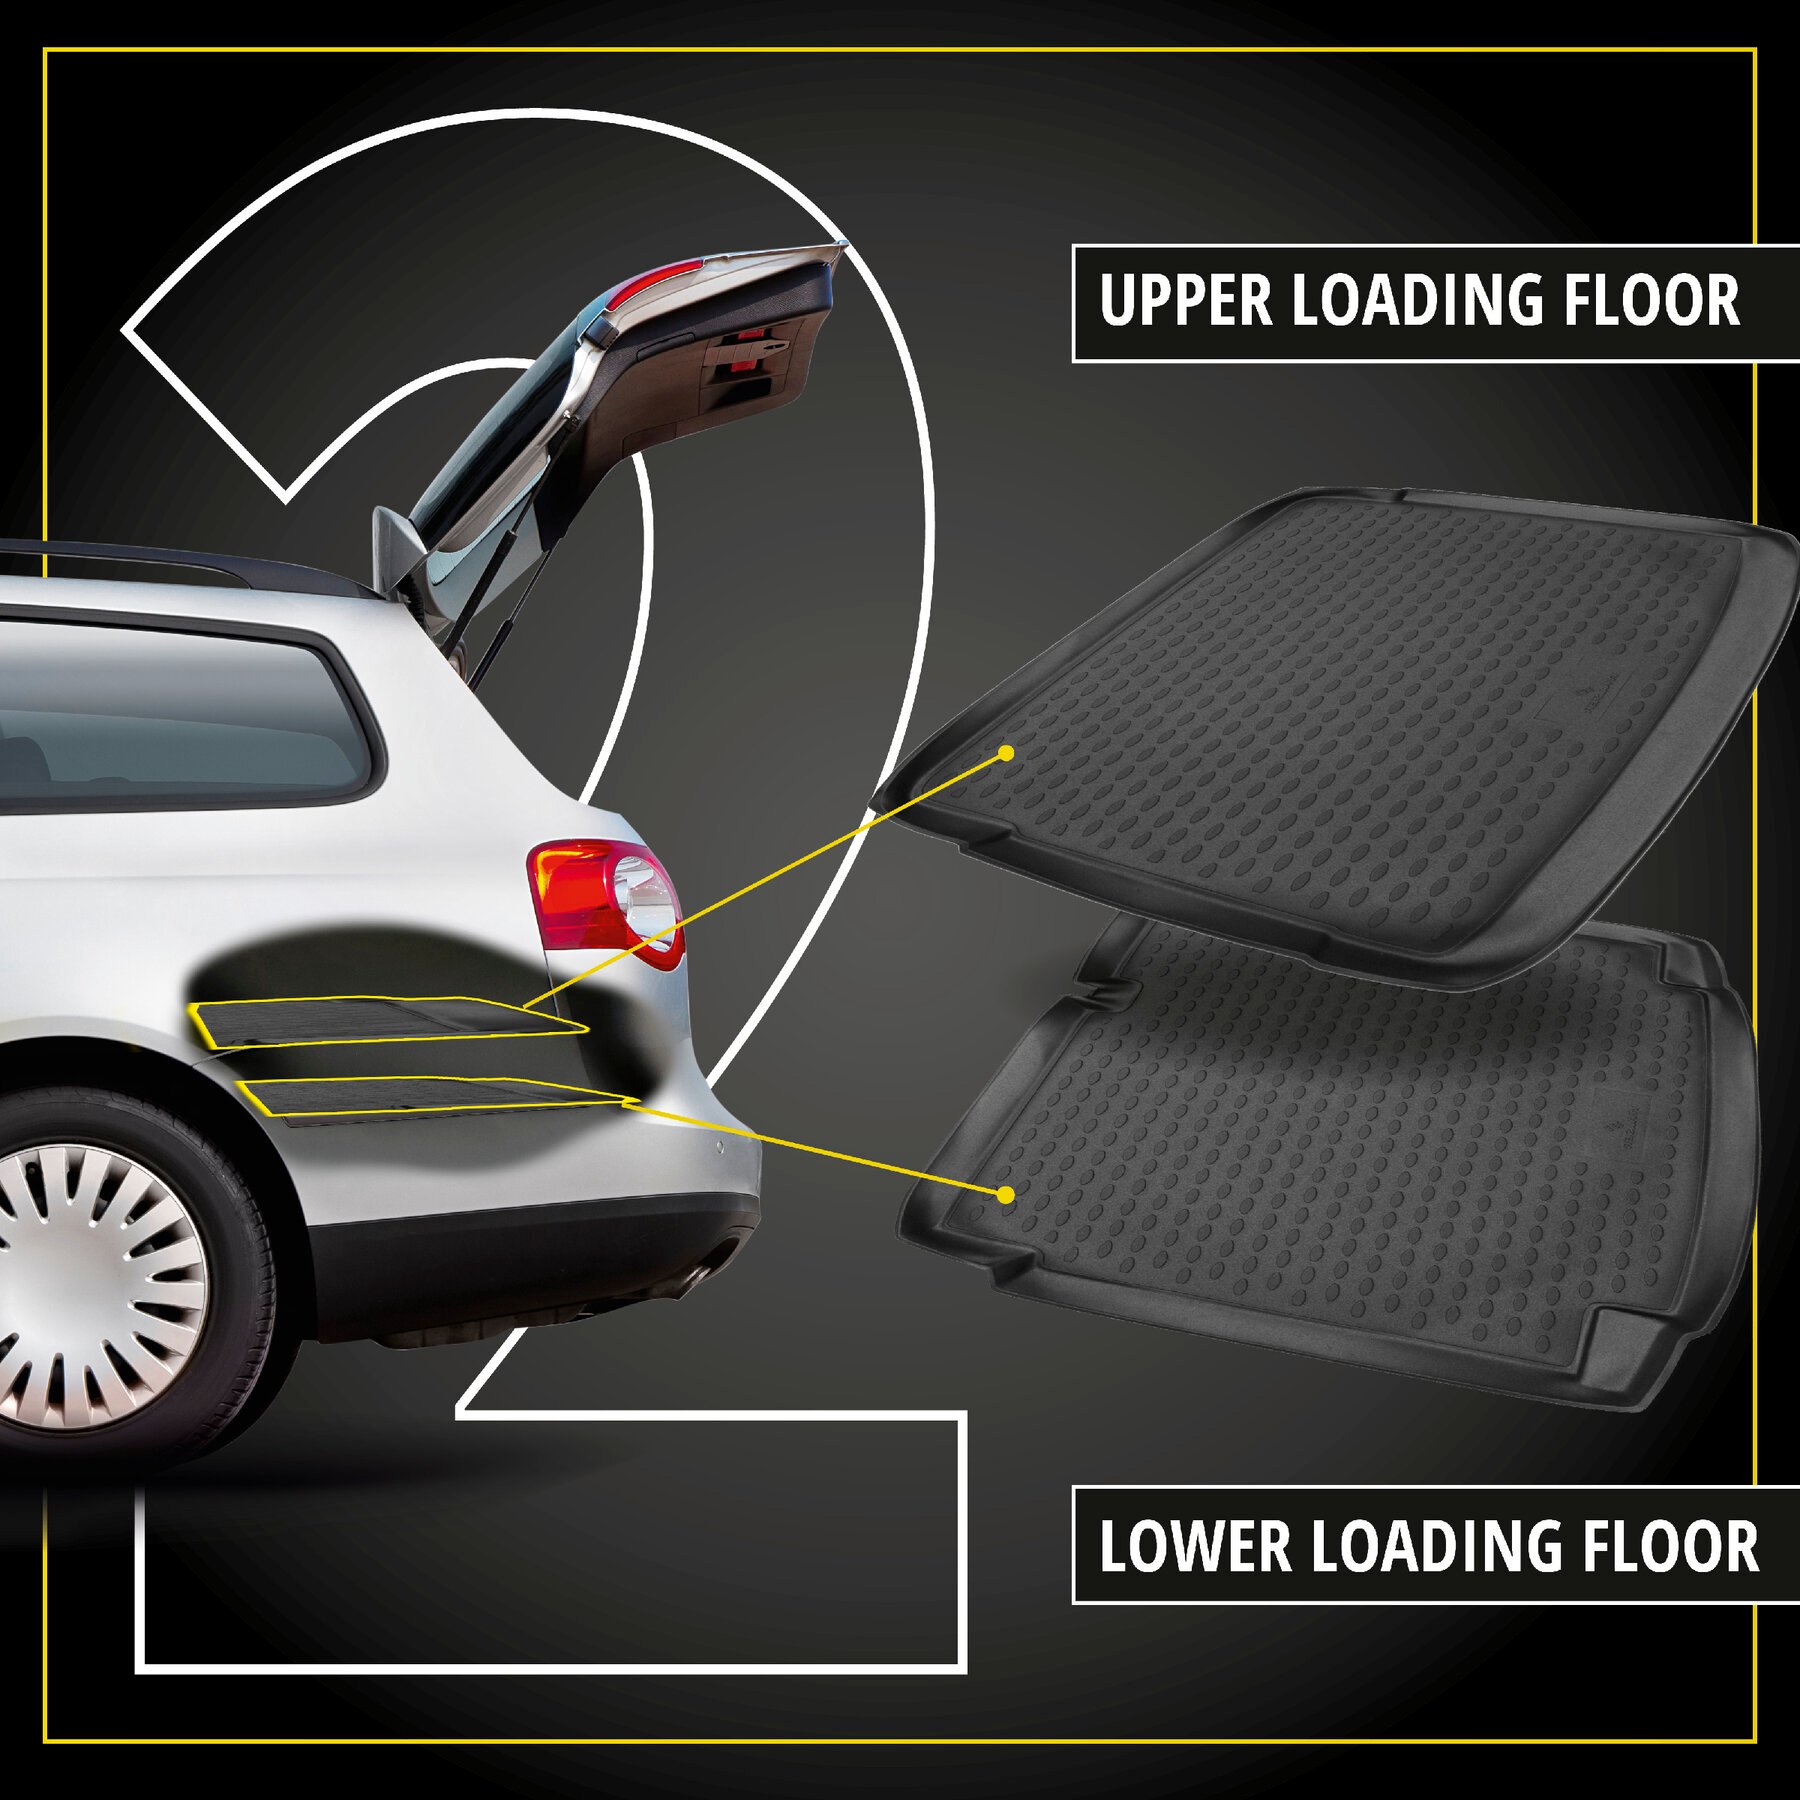 XTR Boot Mat for Opel Corsa D 2006 - 2014, upper loading floor